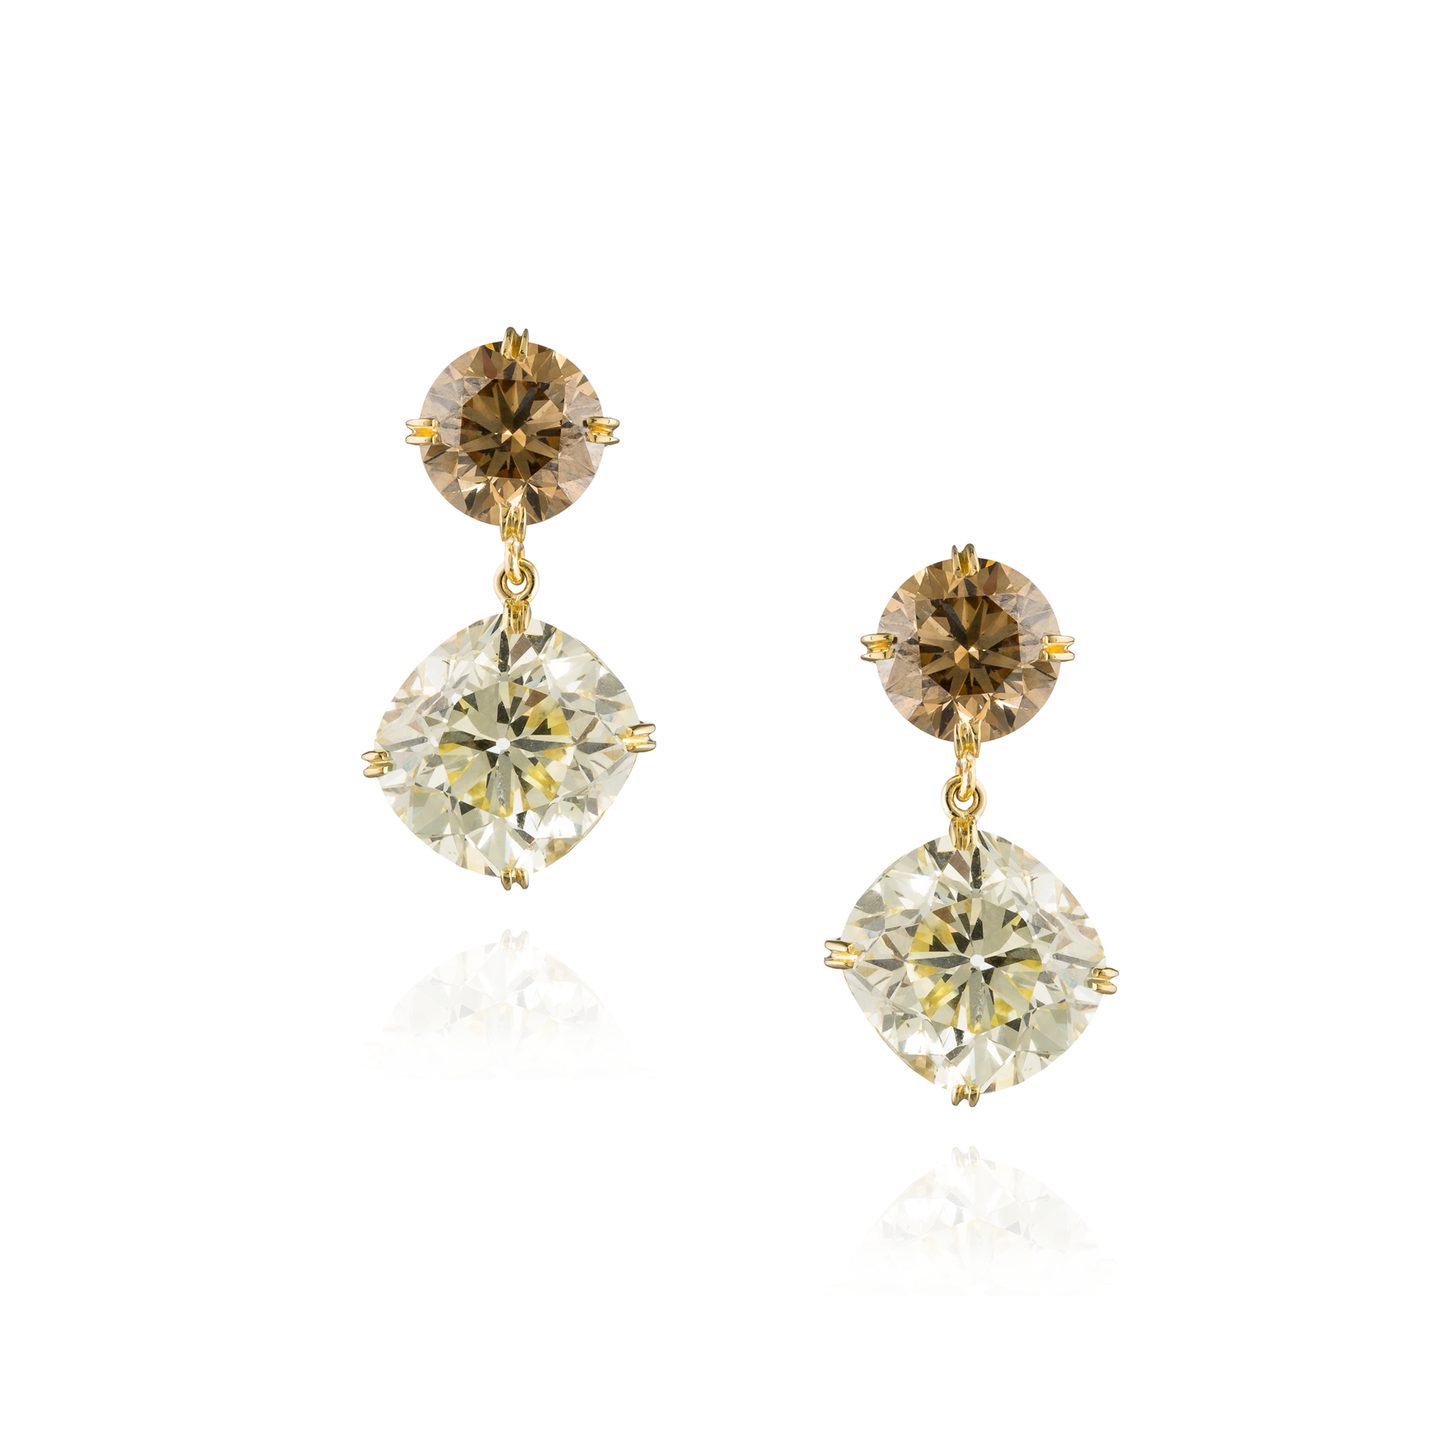 Fancy earrings – Roxelana Designer Jewelry & Fine Gifts